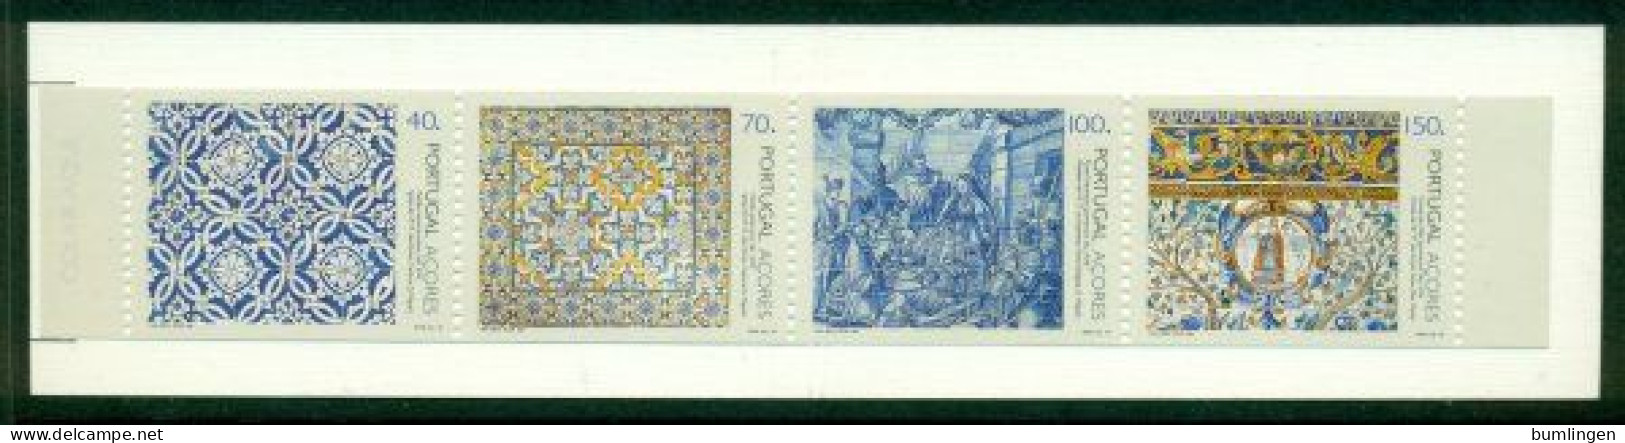 PORTUGAL – AZORES 1994 Mi MH 12 Booklet** Antique Tiles [B406] - Porcelaine